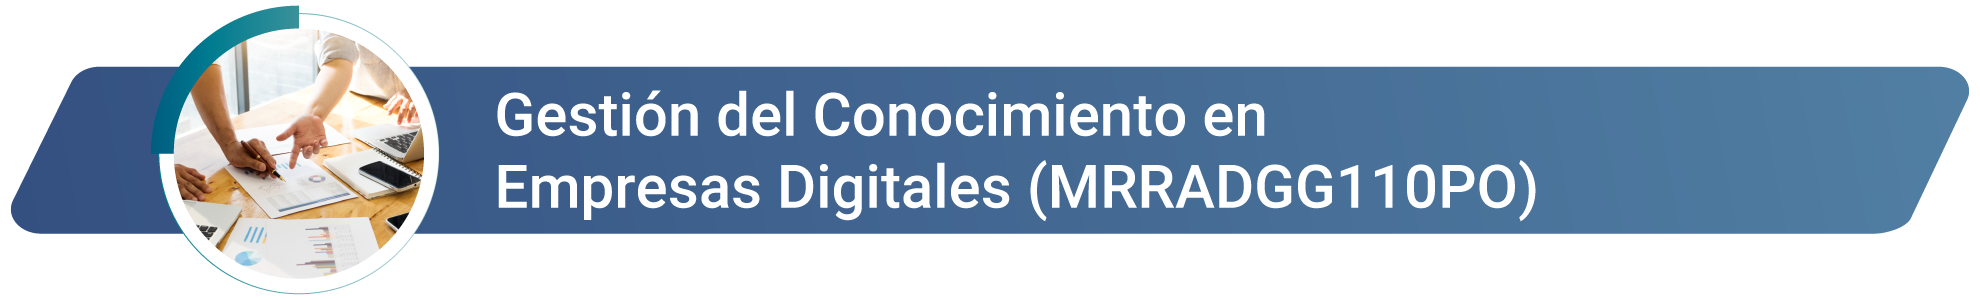 MRRADGG110PO - Gestión del Conocimiento en Empresas Digitales